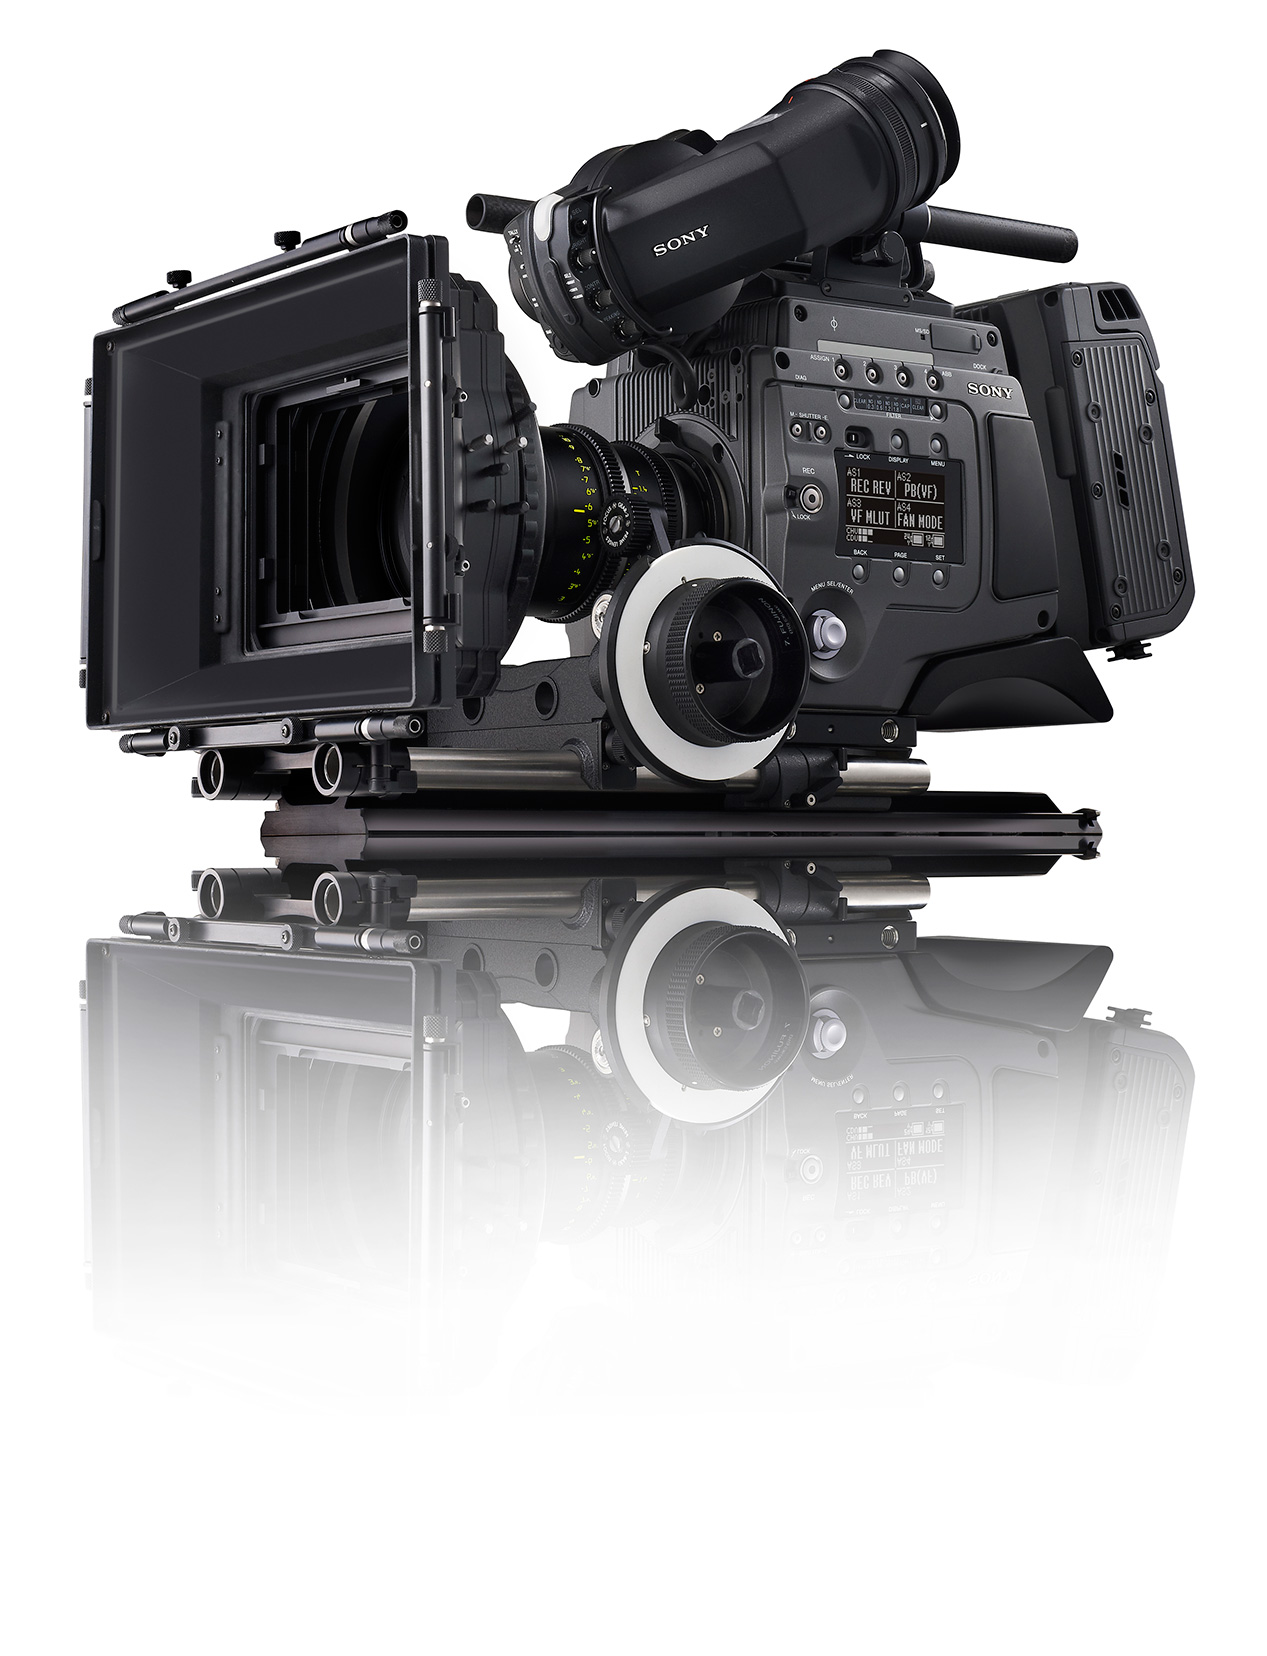 Sony-F65-camera-lg